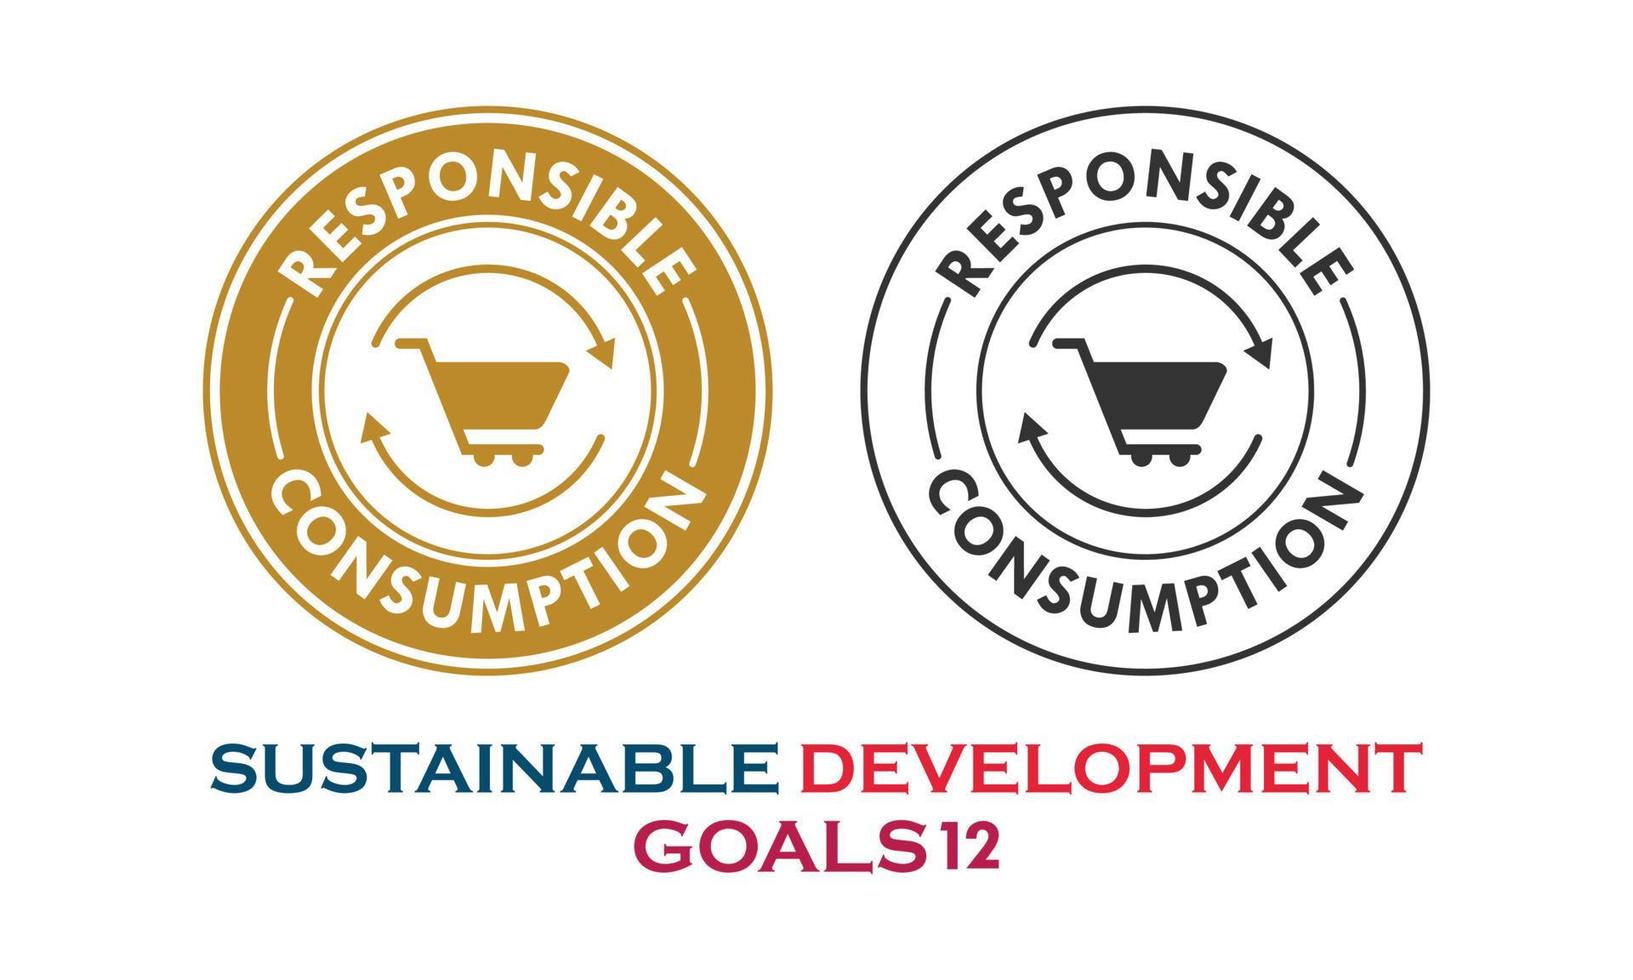 objetivos de desarrollo sostenible, elemento de consumo responsable vector